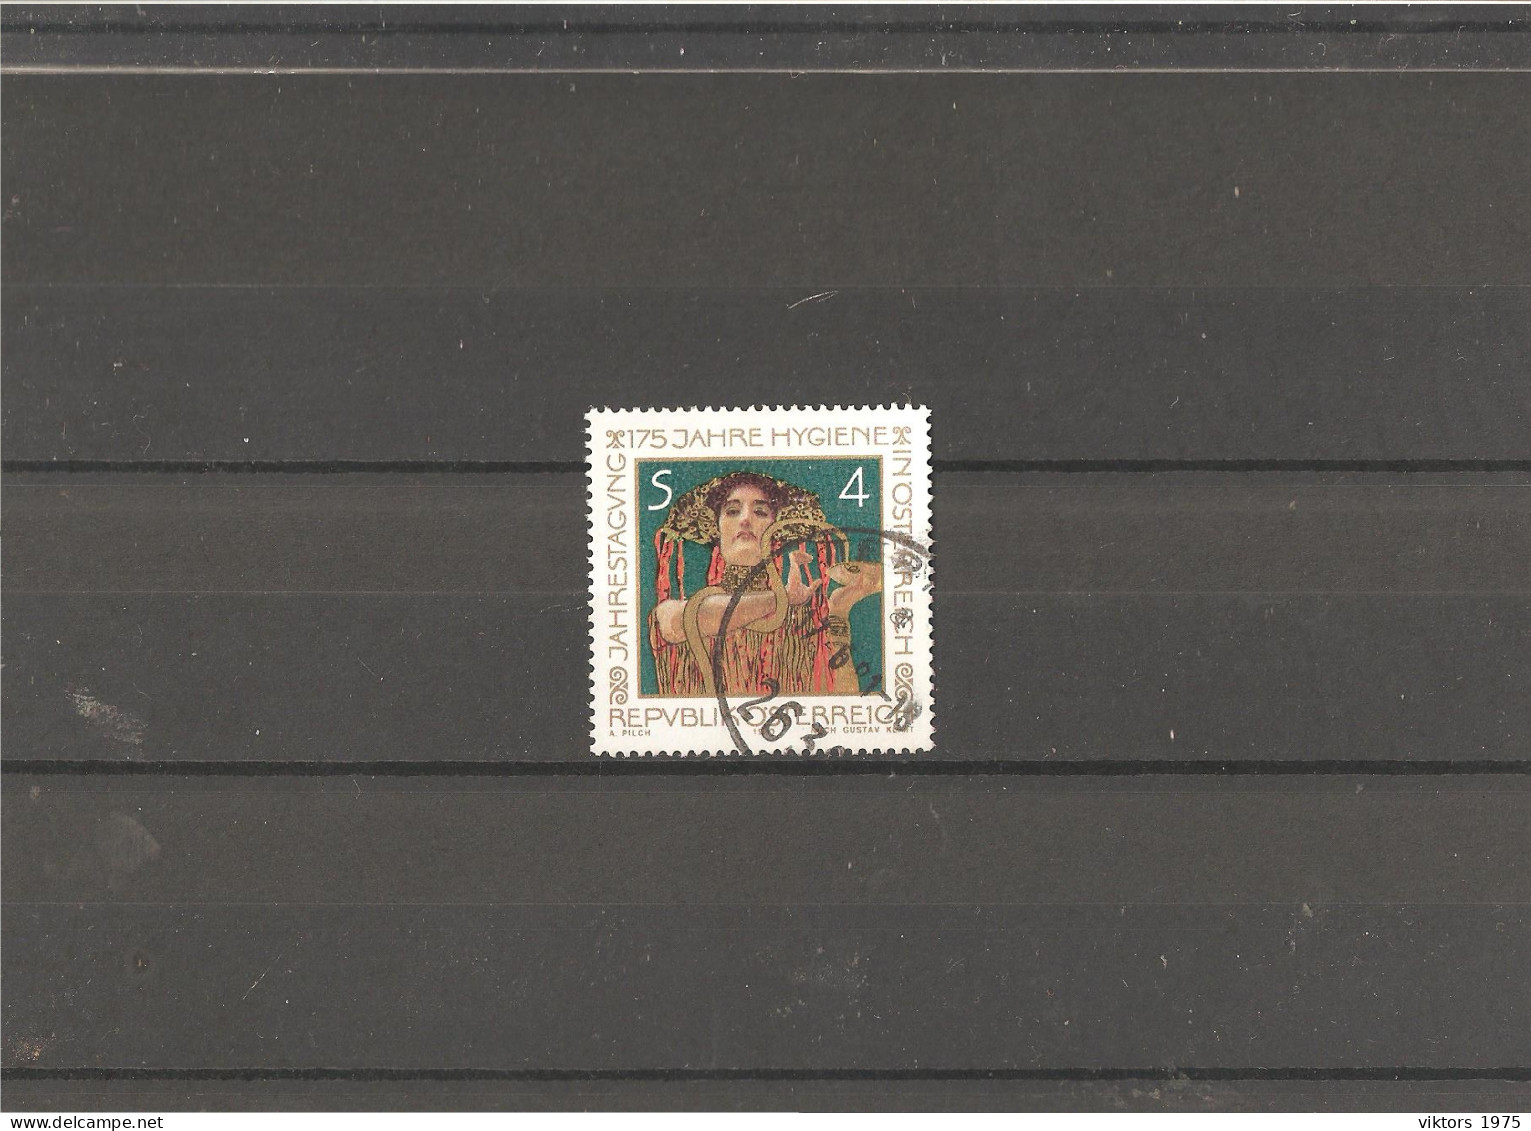 Used Stamp Nr.1643 In MICHEL Catalog - Usati